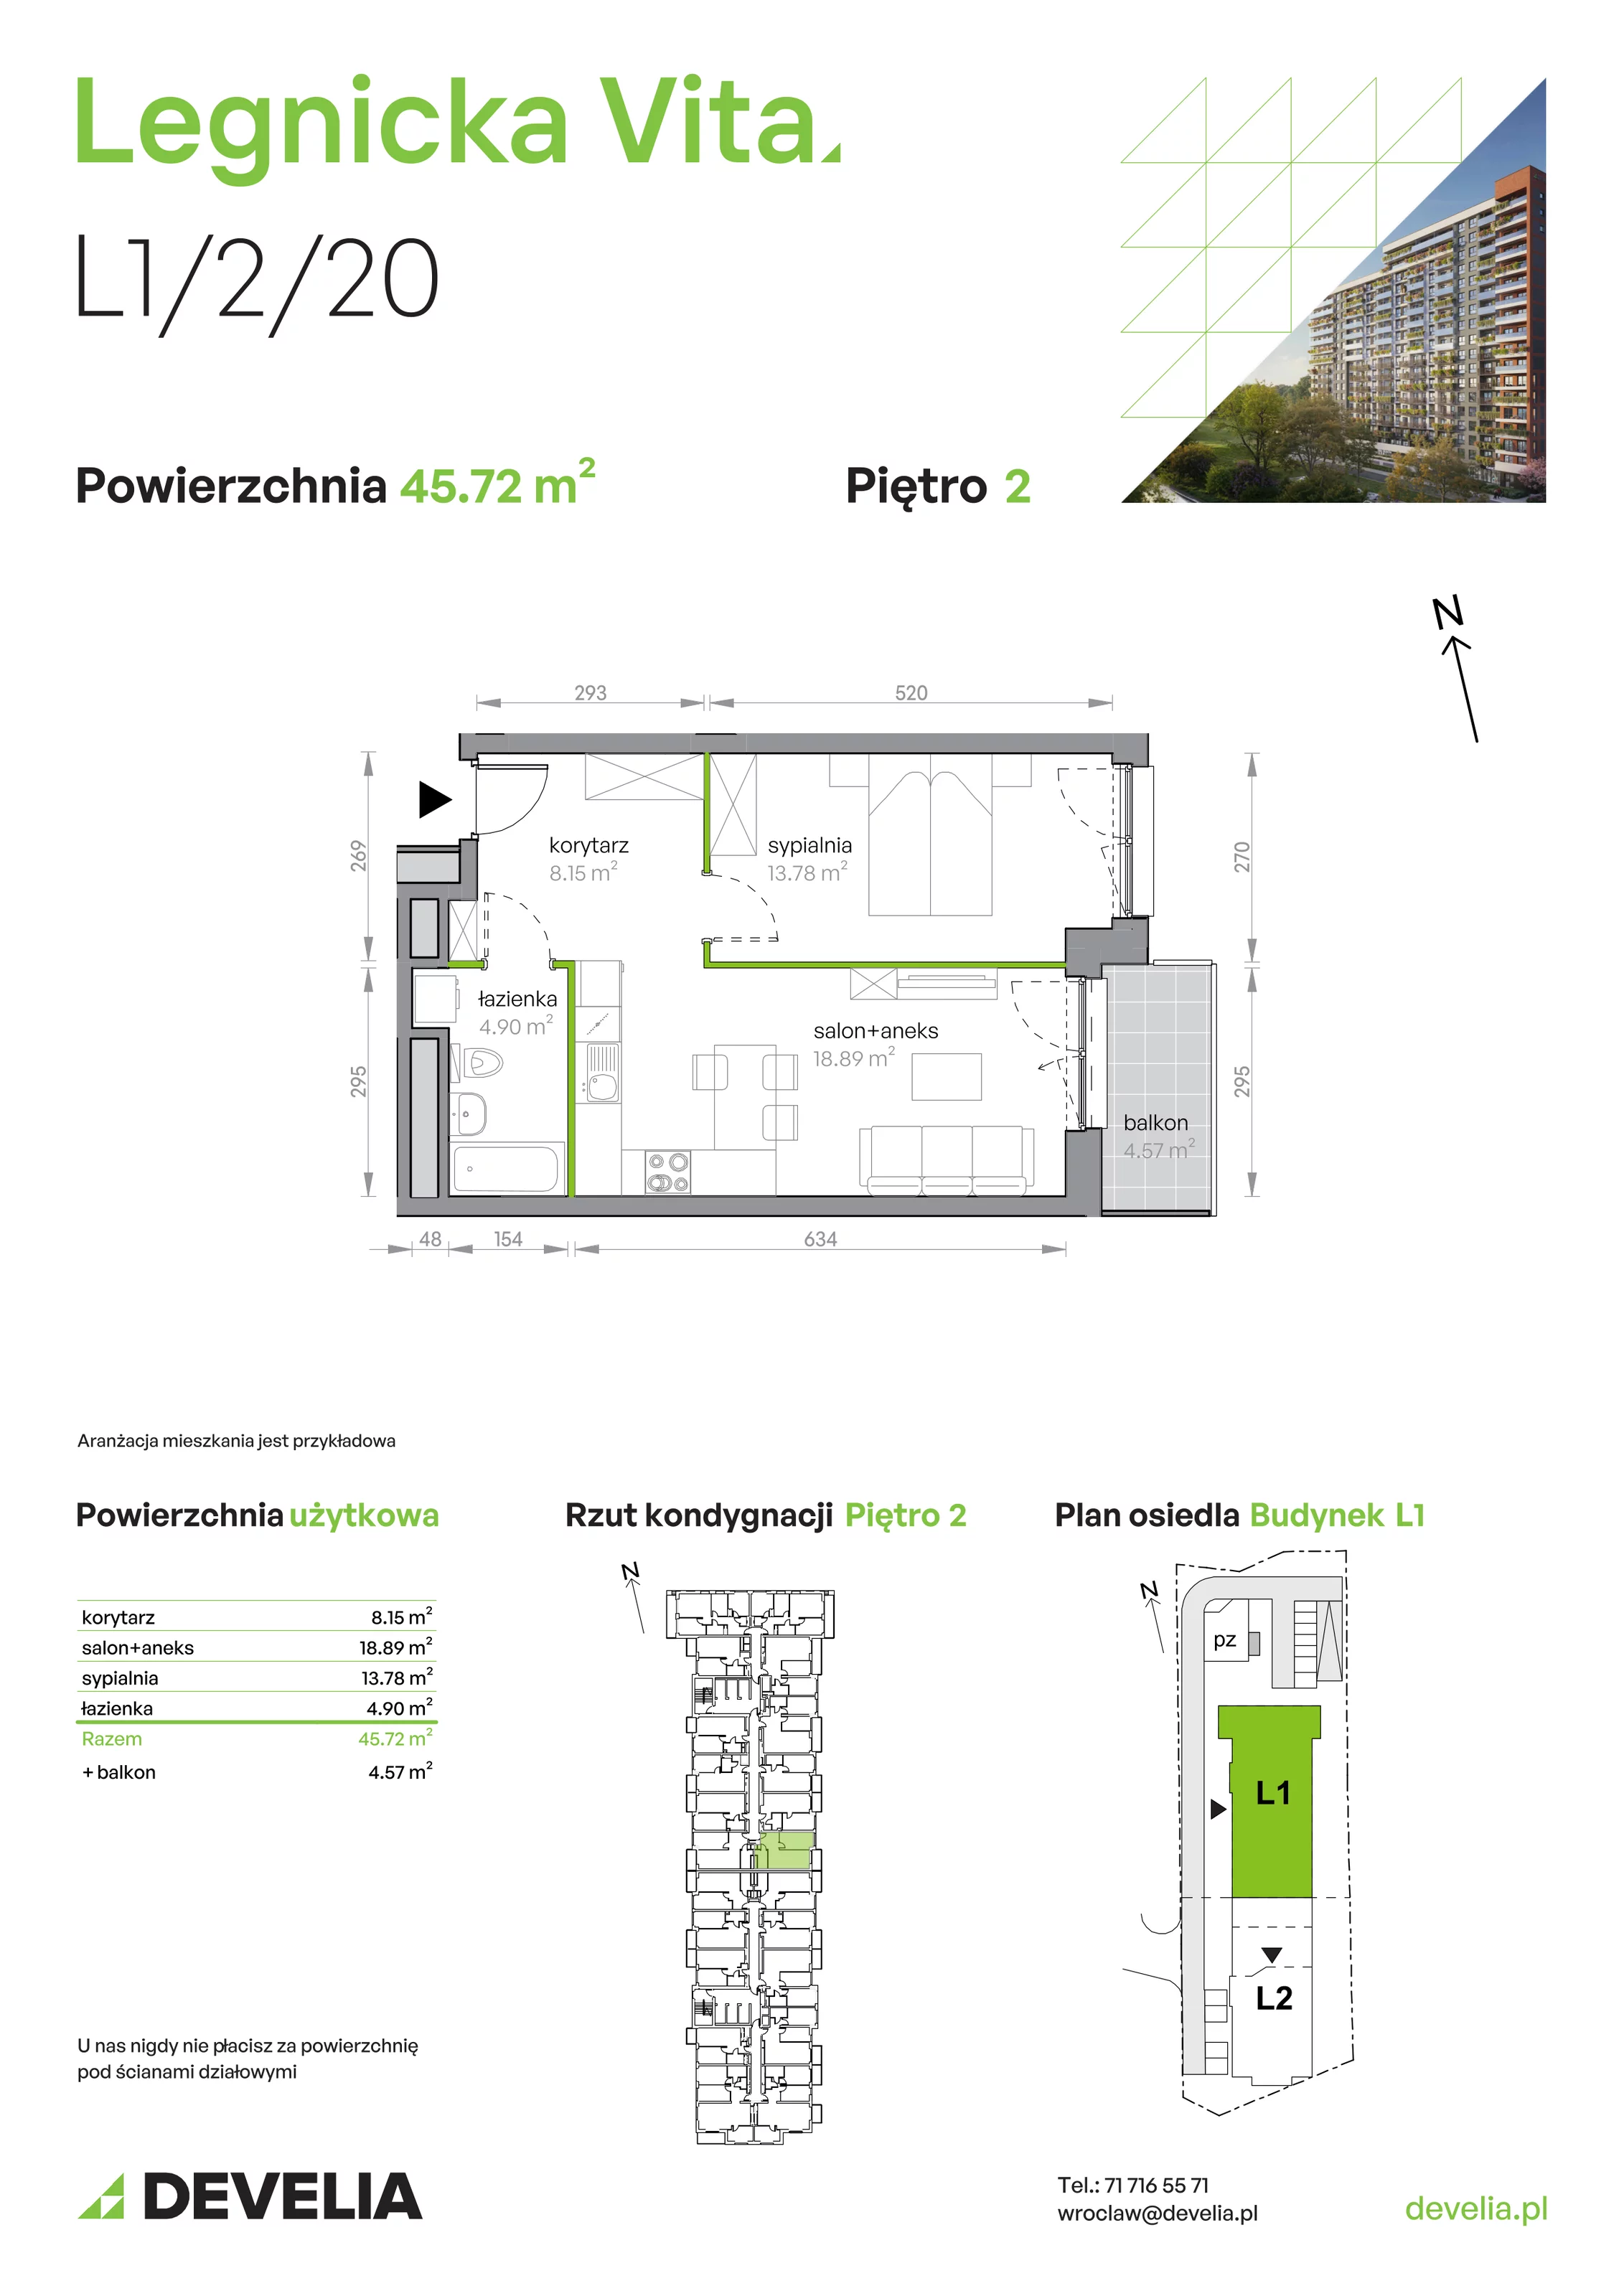 Mieszkanie 45,72 m², piętro 2, oferta nr L1/2/20, Legnicka Vita, Wrocław, Gądów-Popowice Południowe, Popowice, ul. Legnicka 52 A